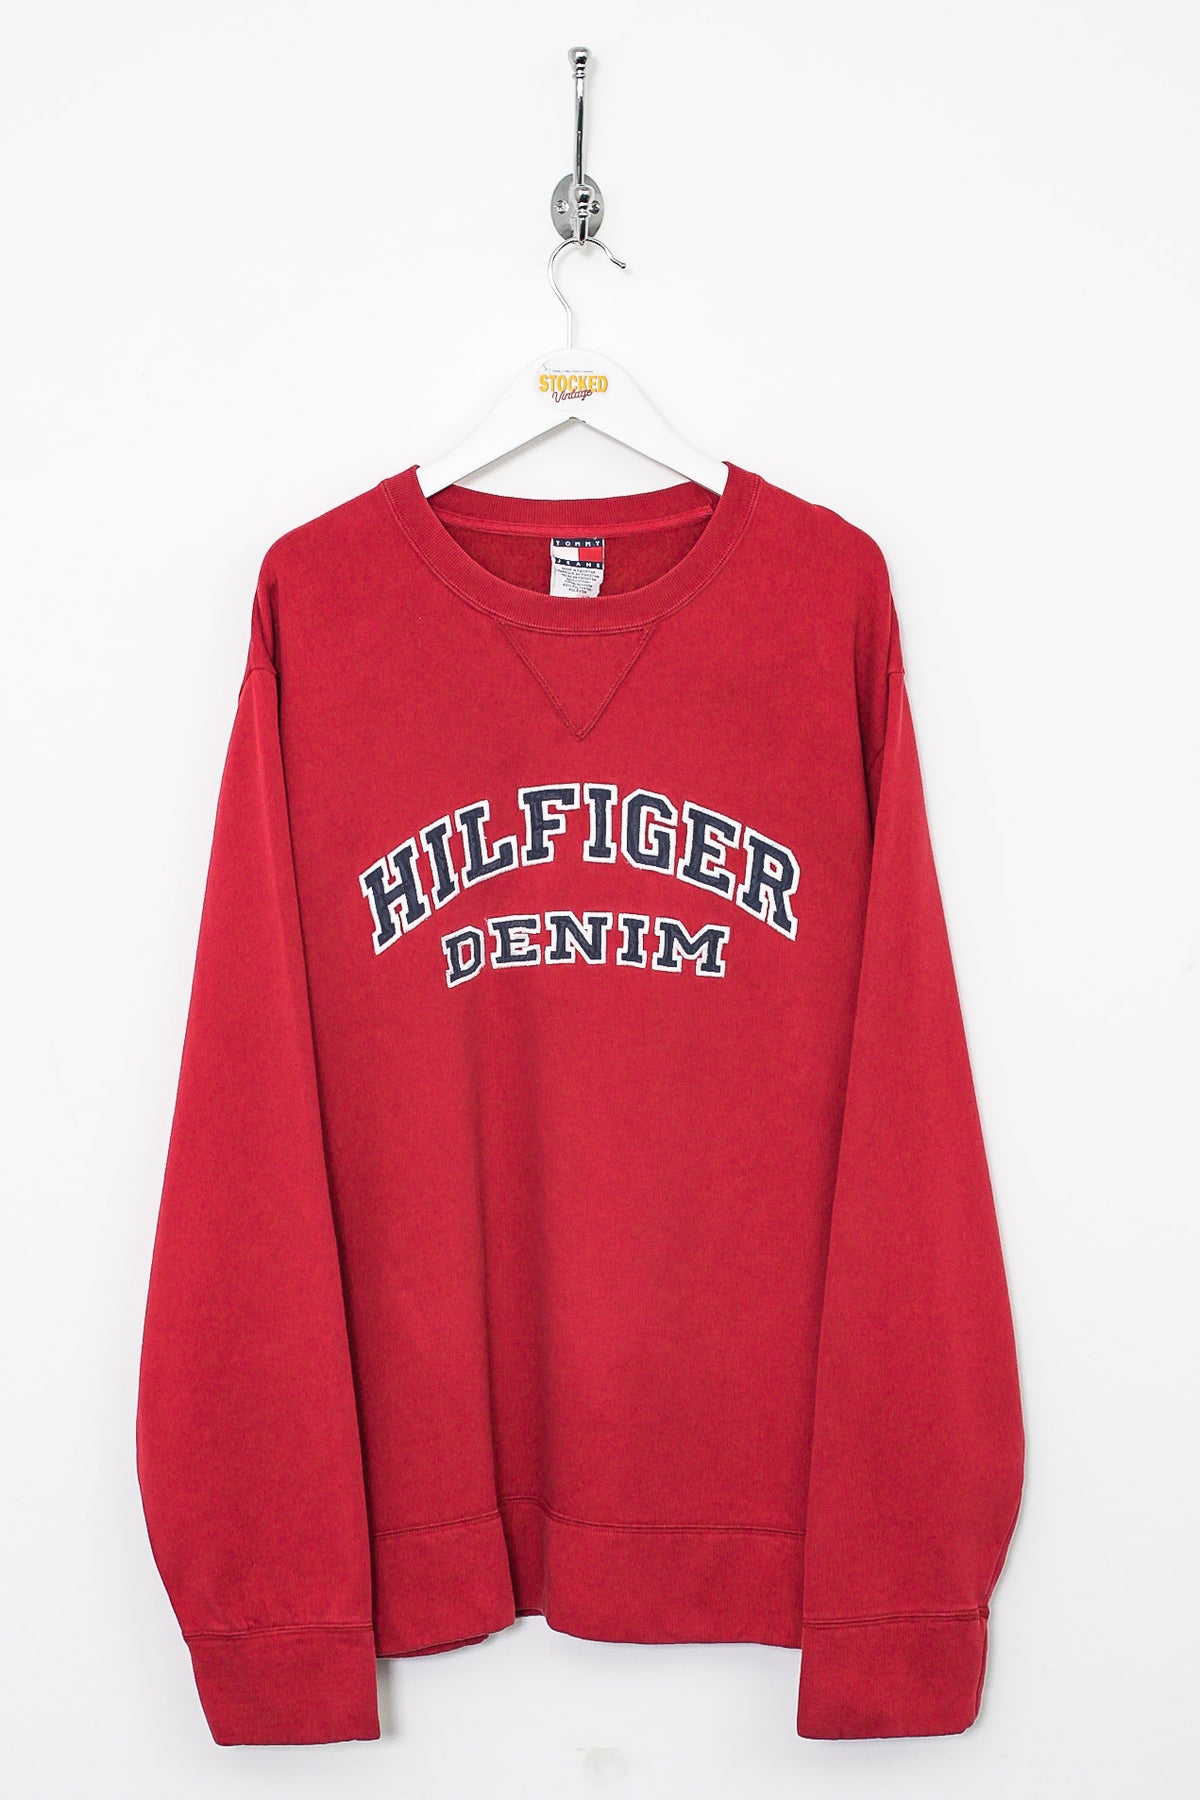 90s Tommy Hilfiger Sweatshirt (L)